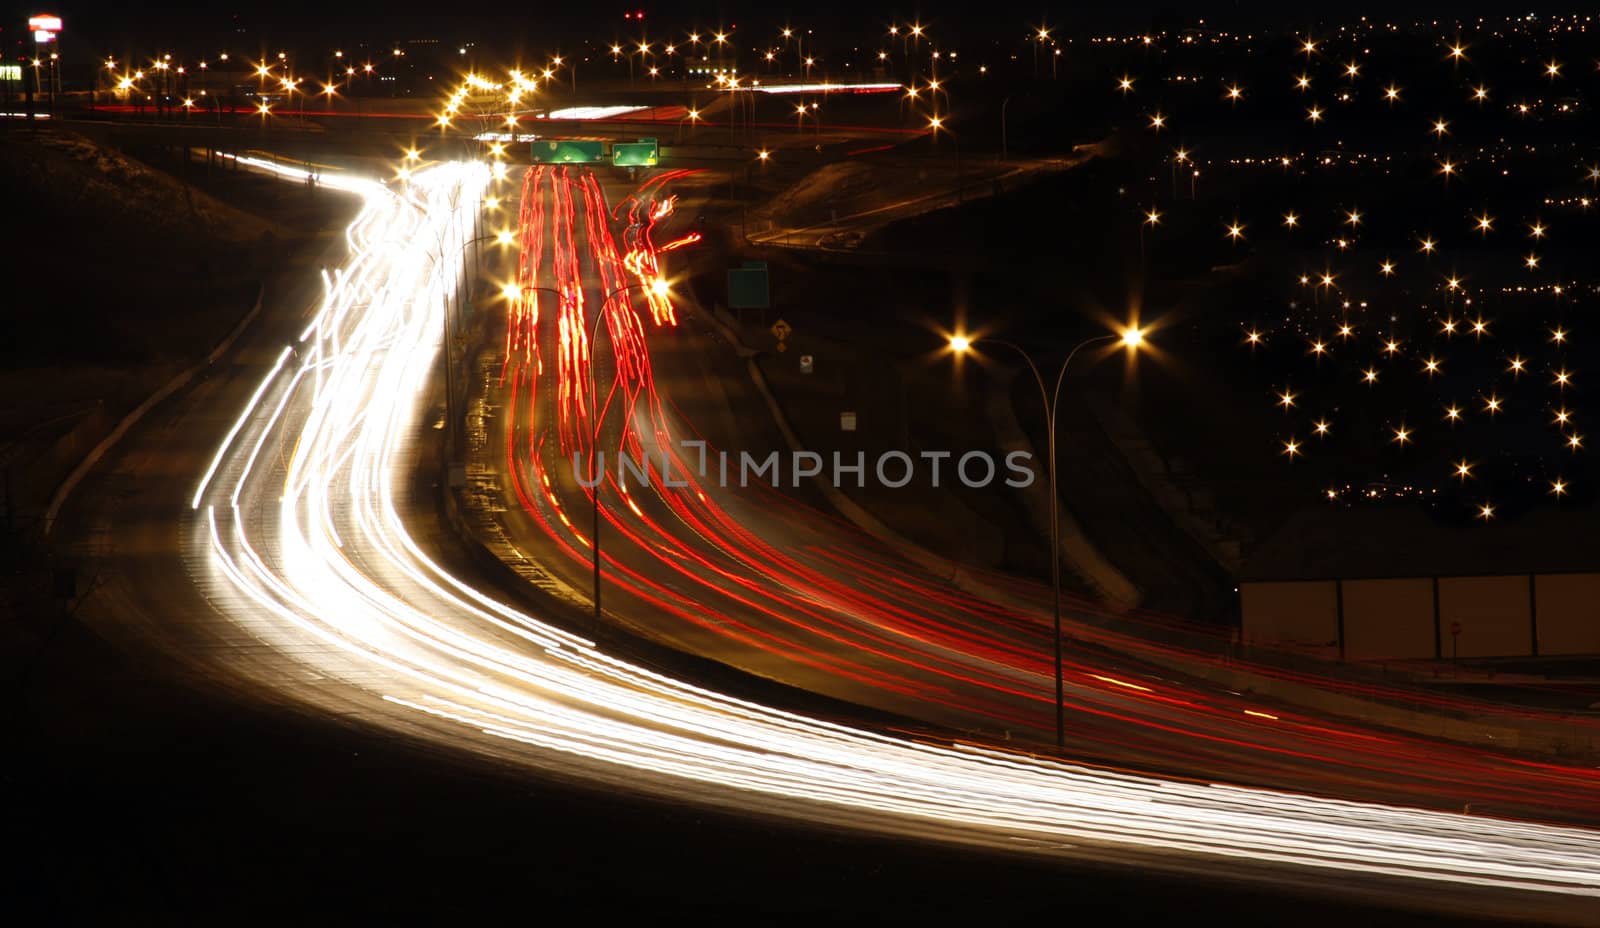 Hwy Traffic by Imagecom